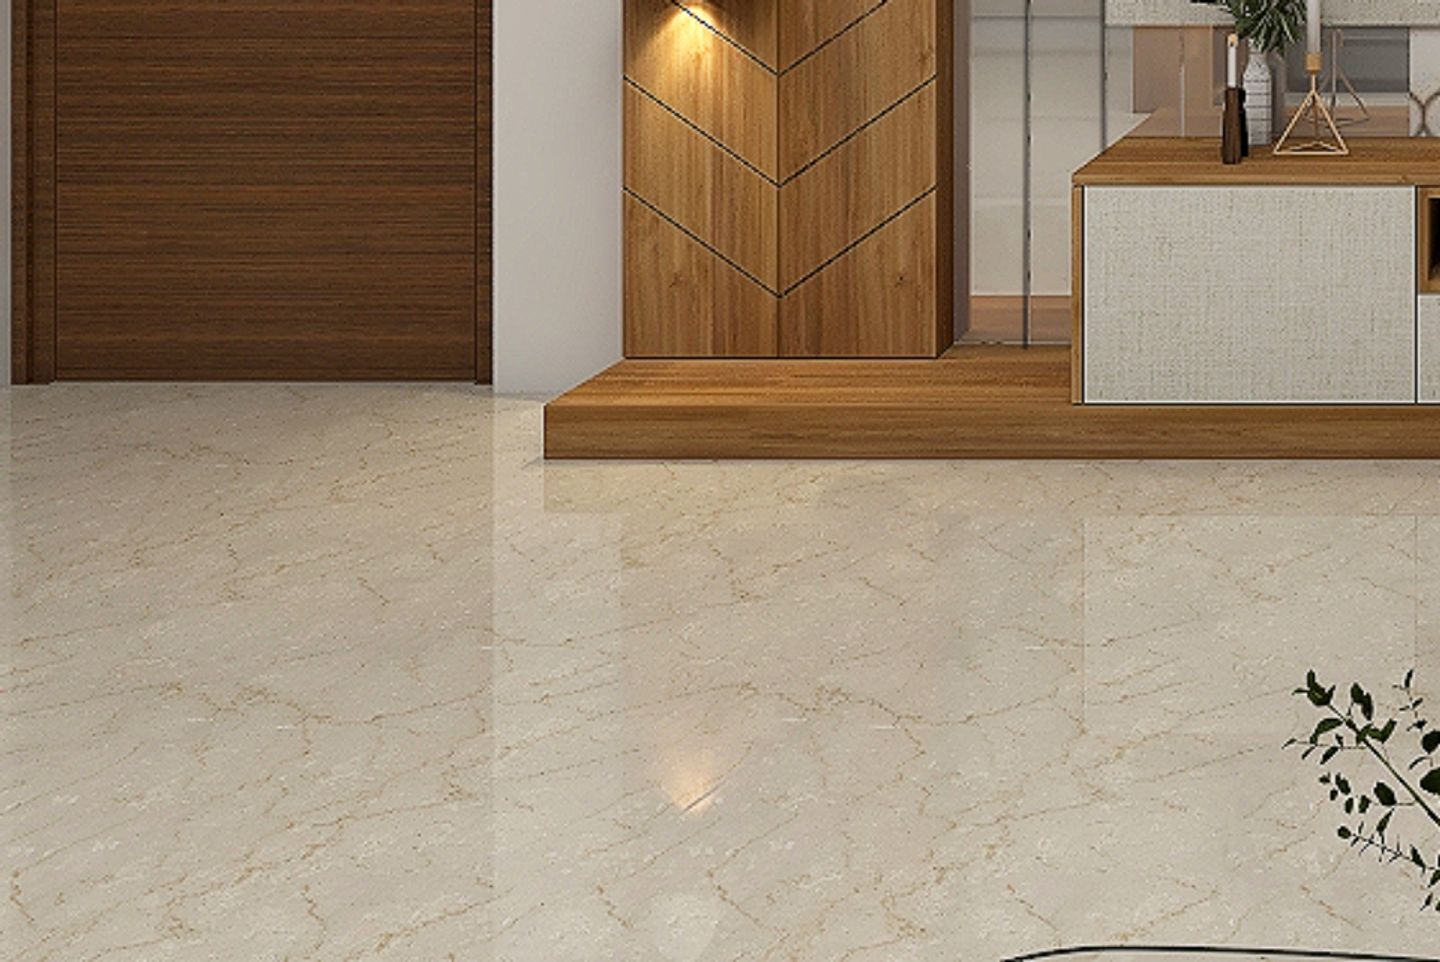 Glossy Marble Floor Tiles - Livspace